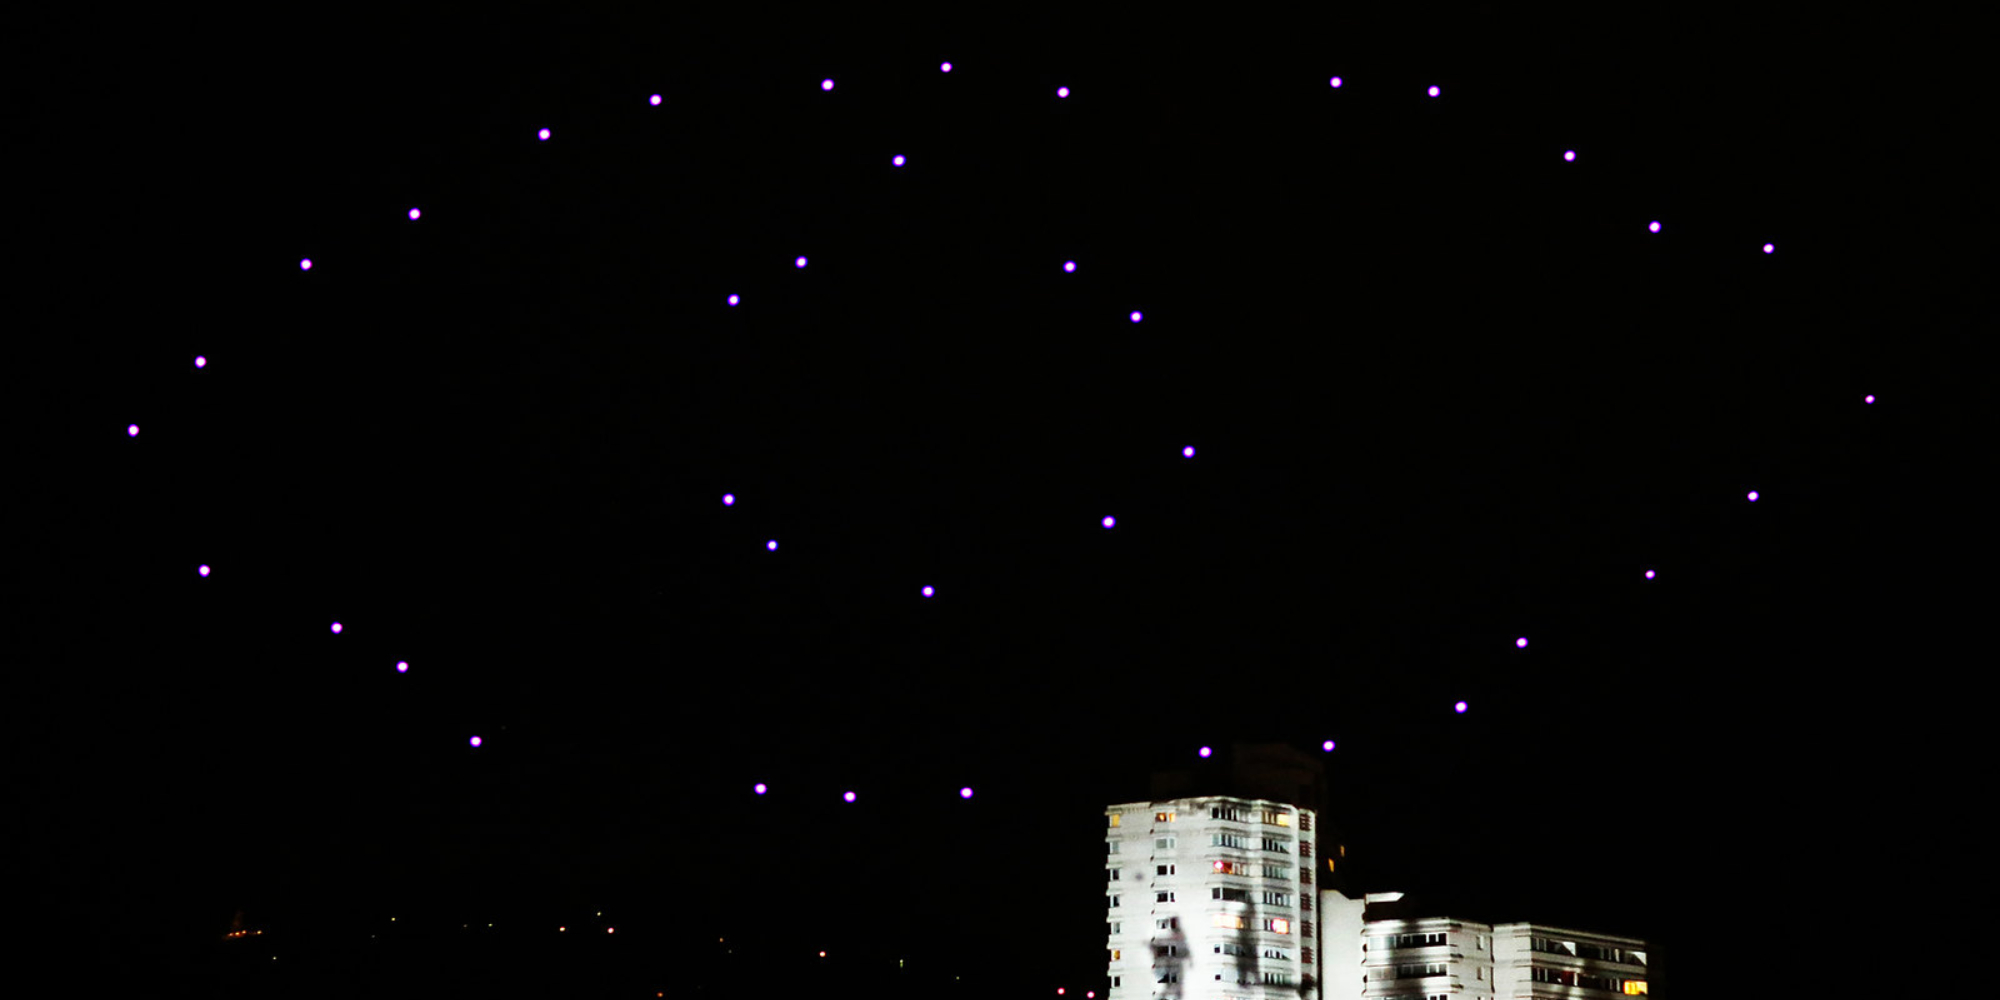 Klangwolke 2012 at night